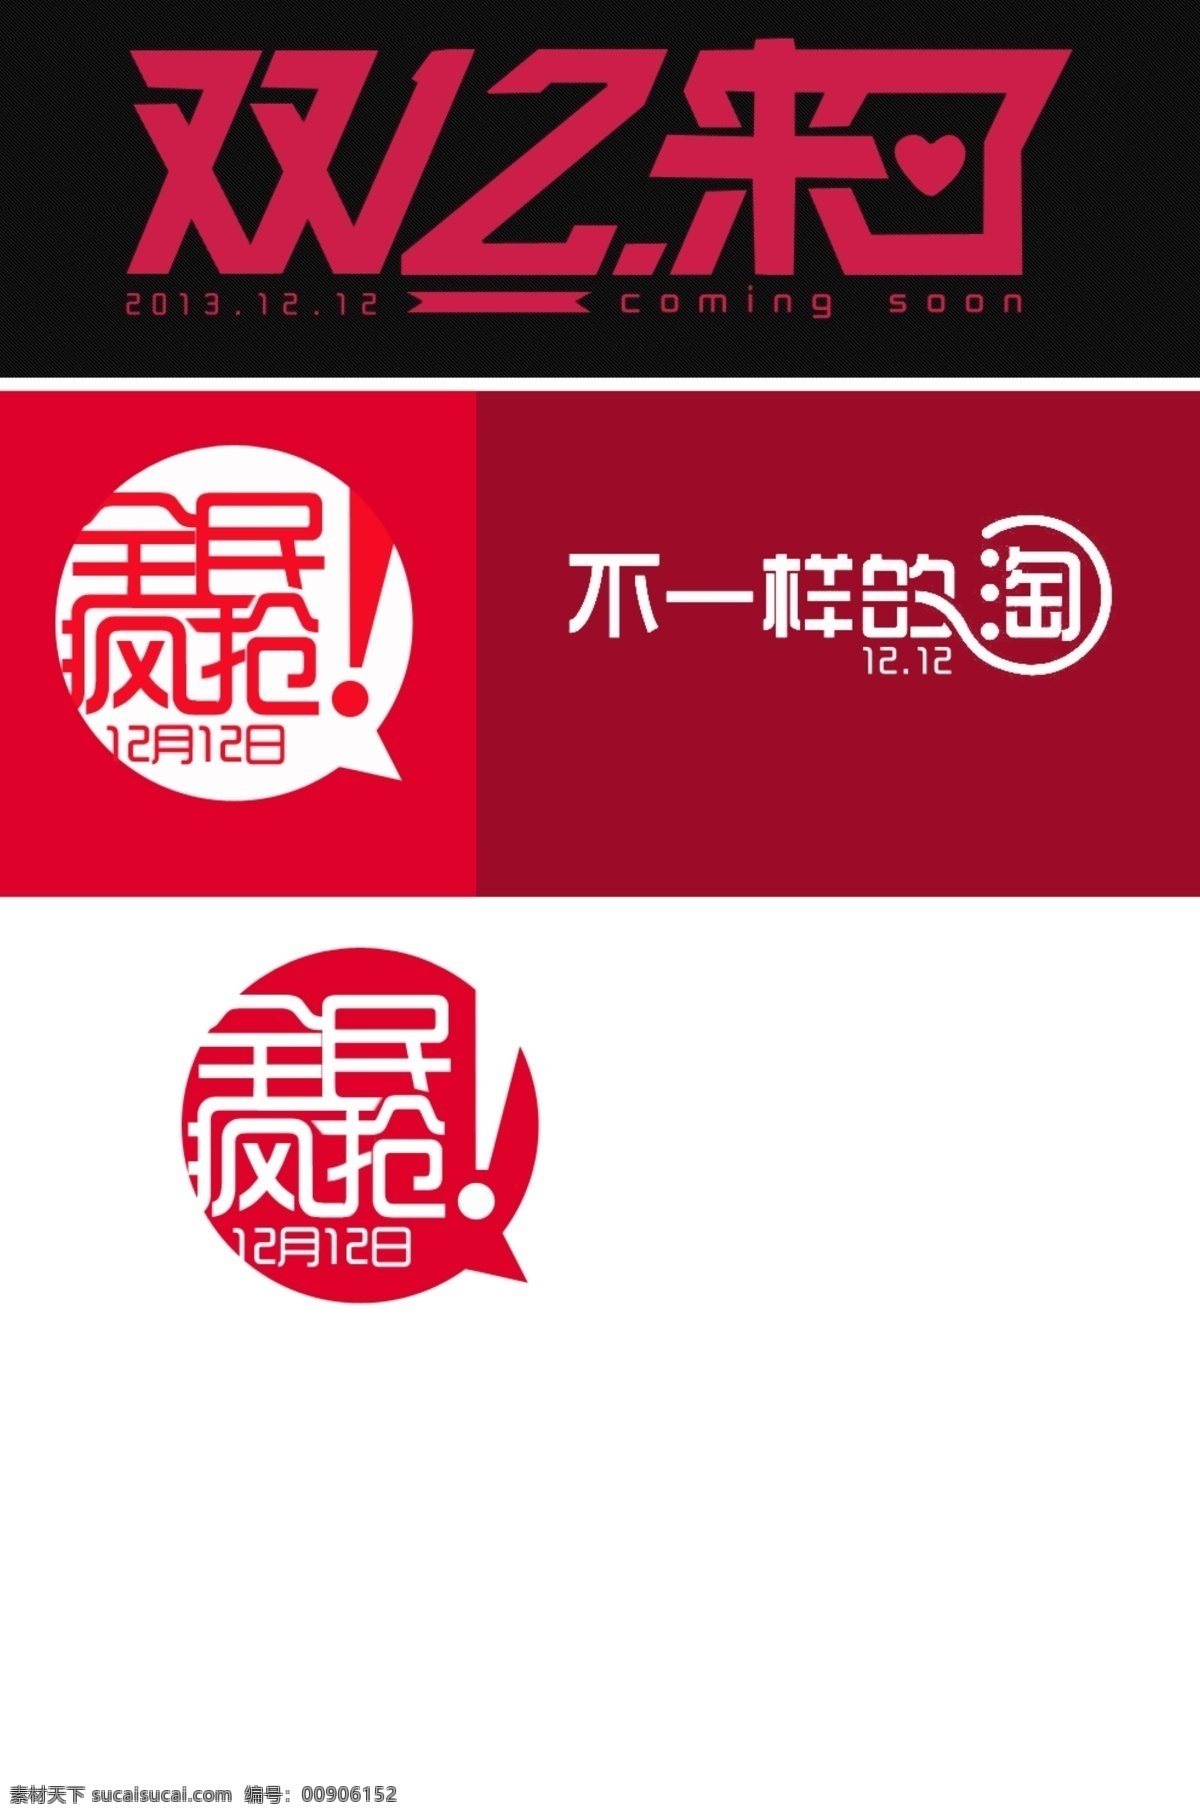 12月12日 2013 不一样的淘 全民疯抢 双12 双12来了 双12字体 网页模板 双 字体 模板下载 中文模板 源文件 网页素材